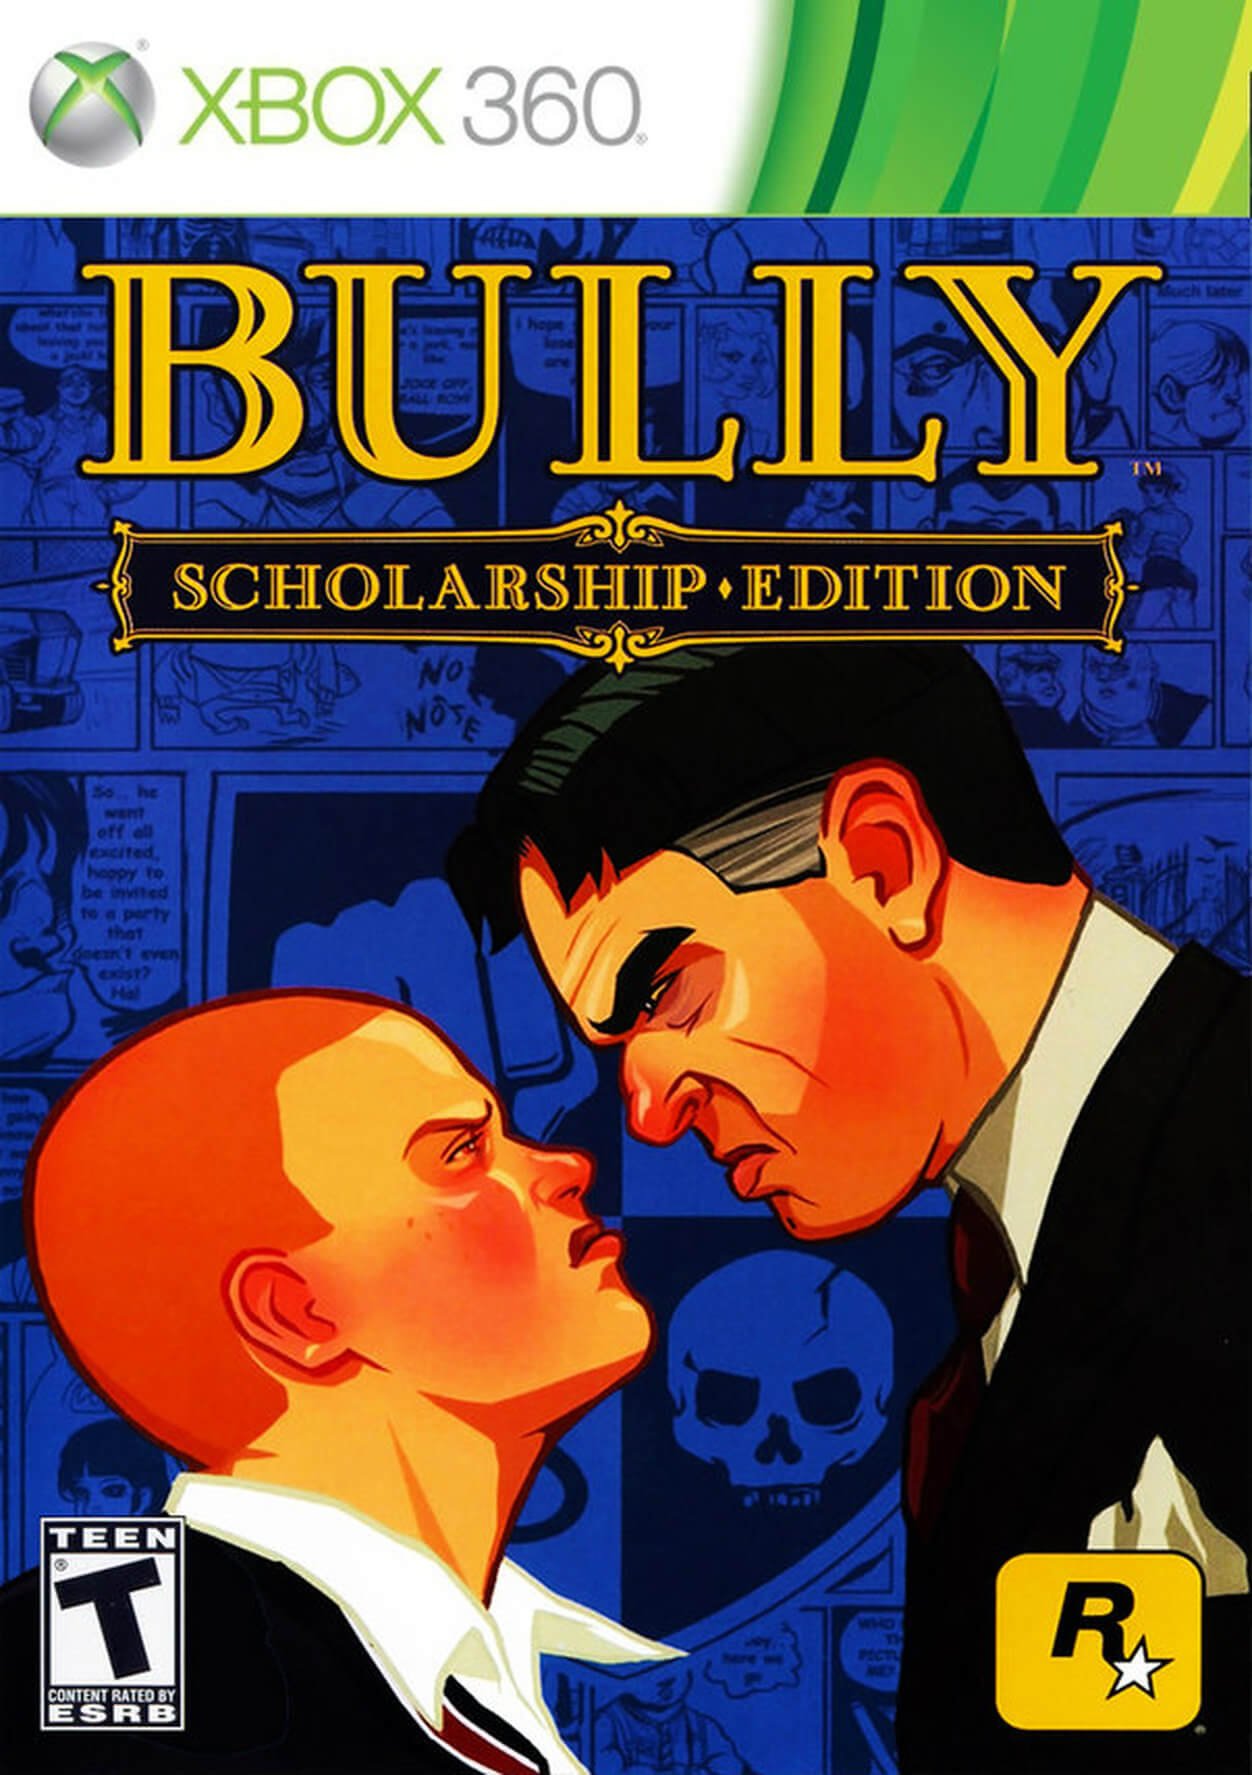 Jogo Bully – Xbox 360 Digital – Download da Live – Alabam